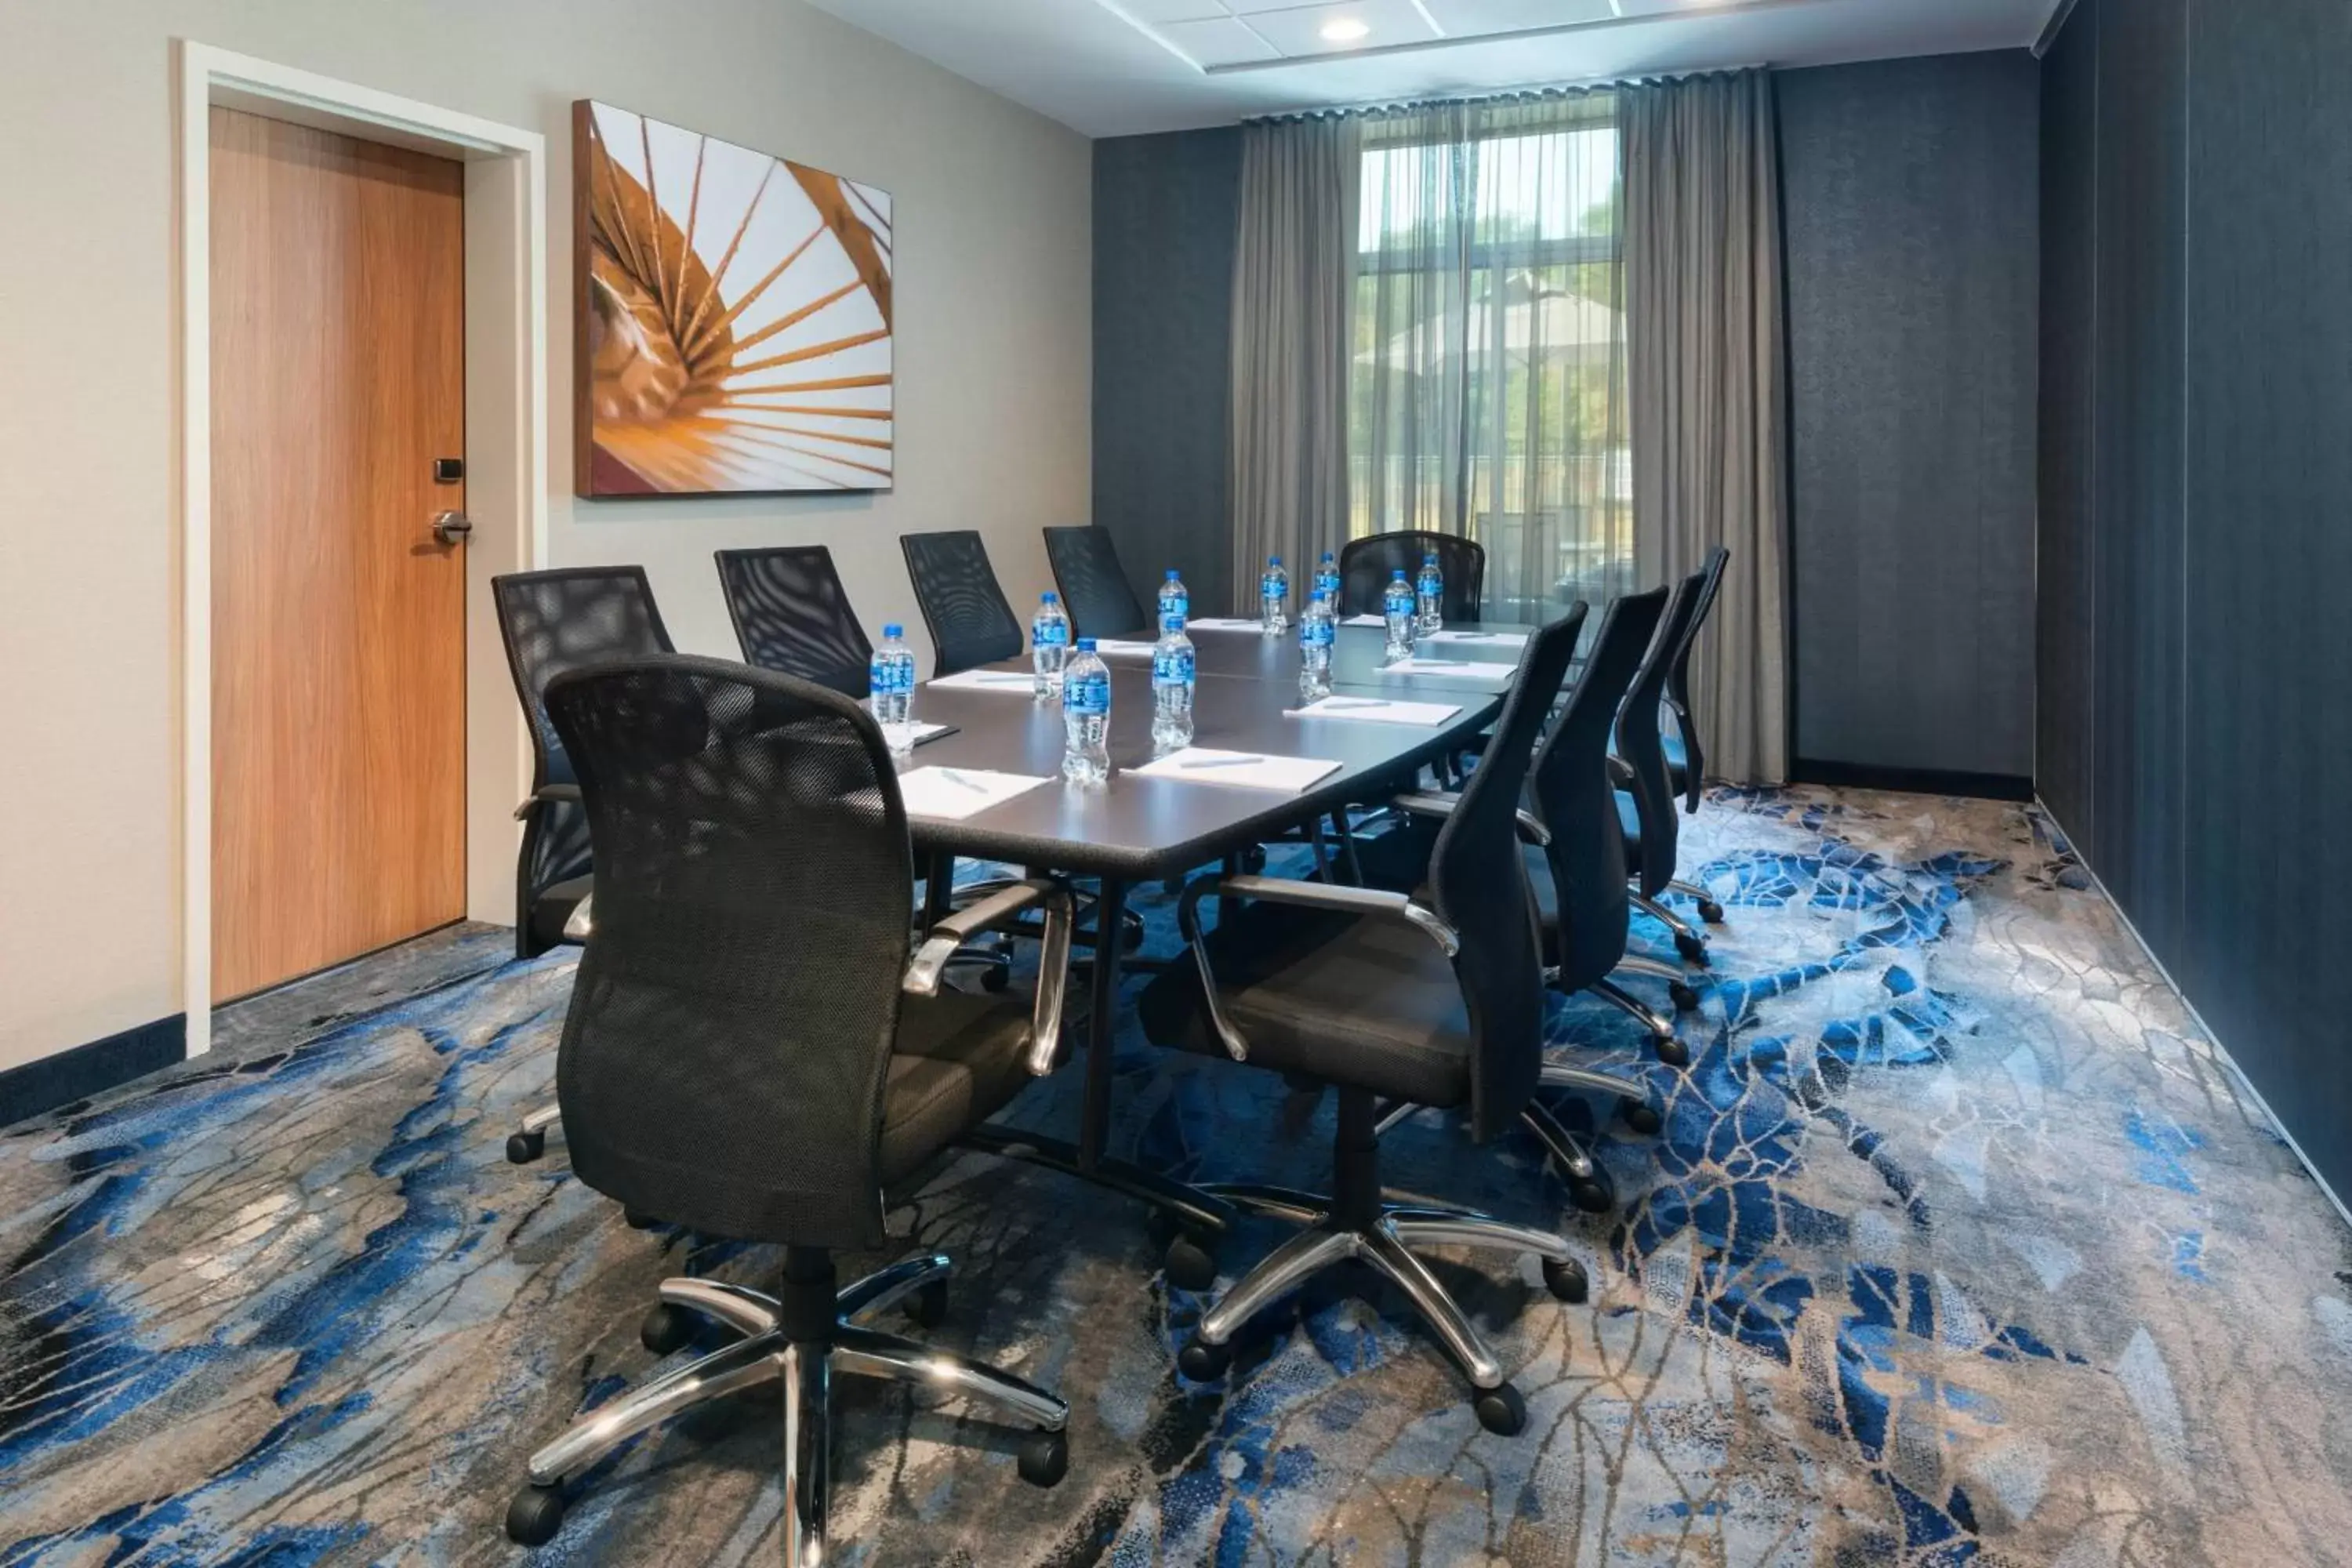 Meeting/conference room in Fairfield Inn & Suites Santee